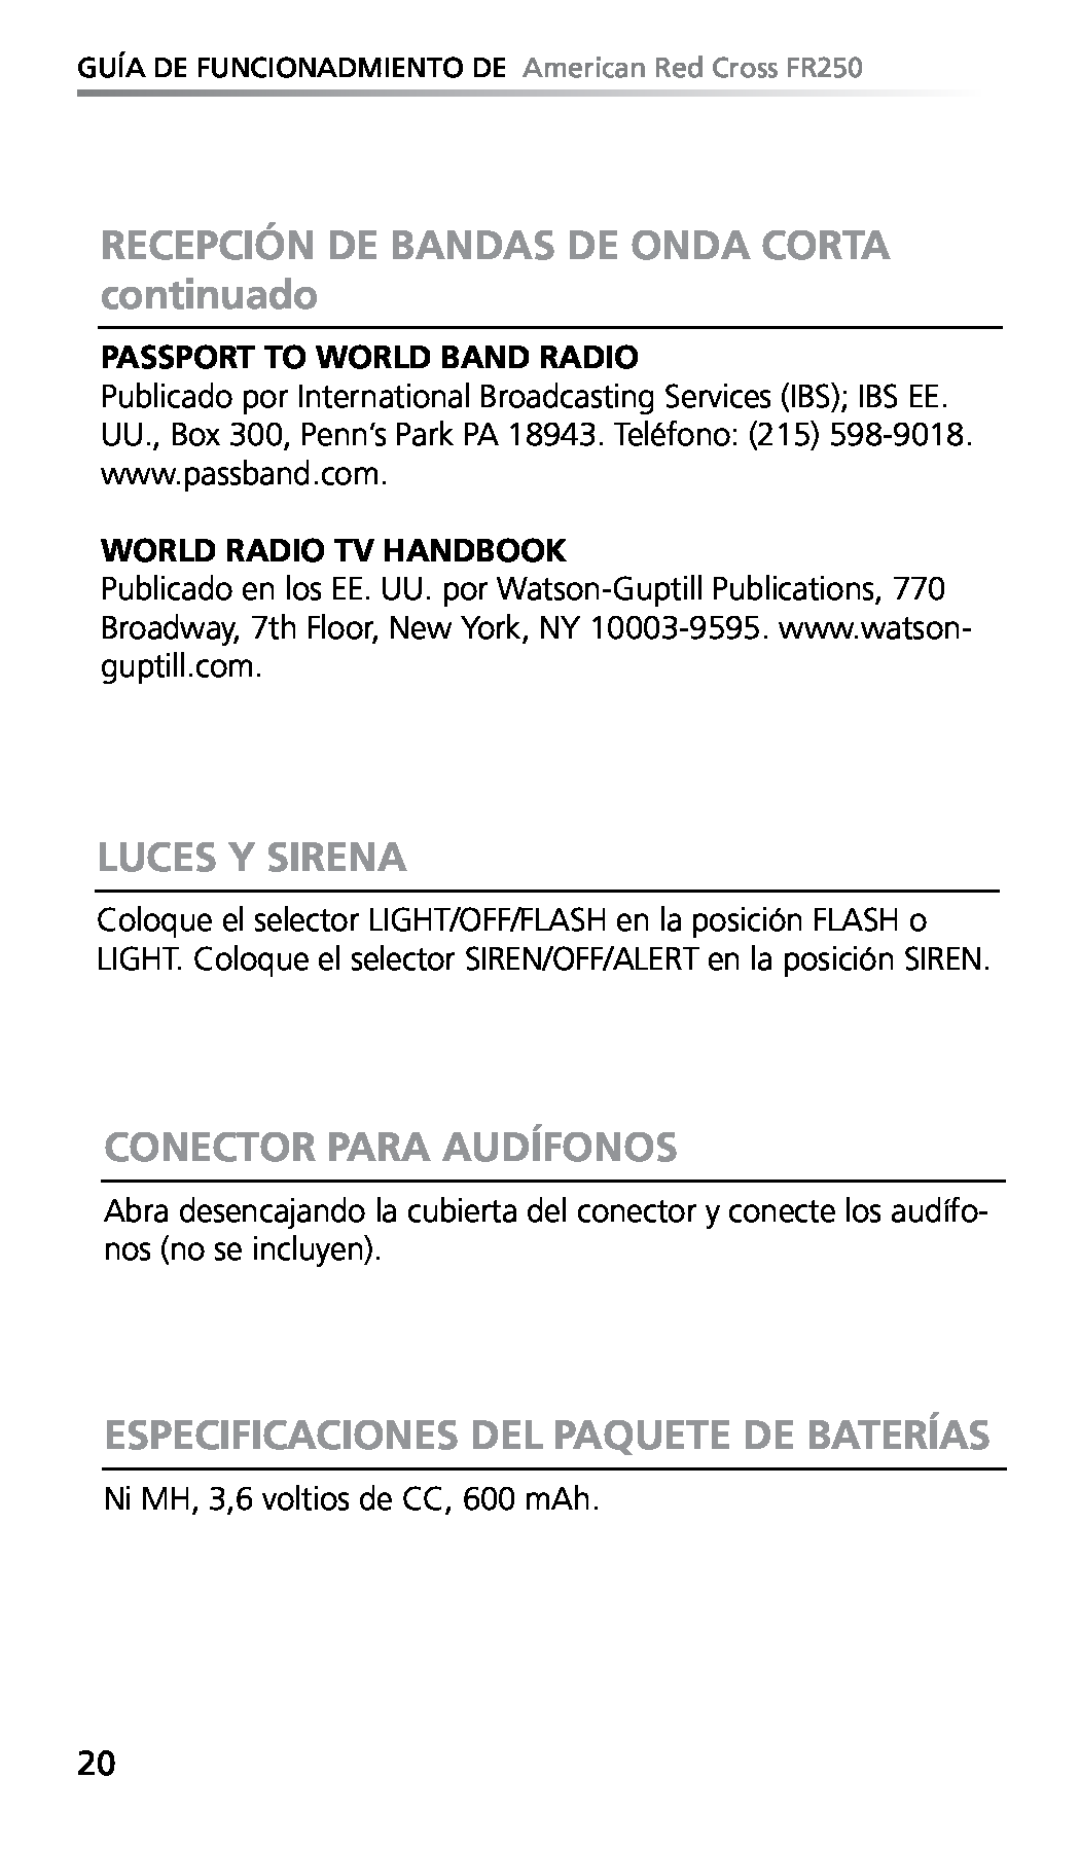 Eton FR250 owner manual RECEPCIÓN DE BANDAS DE ONDA CORTA continuado, Luces Y Sirena, Conector Para Audífonos 